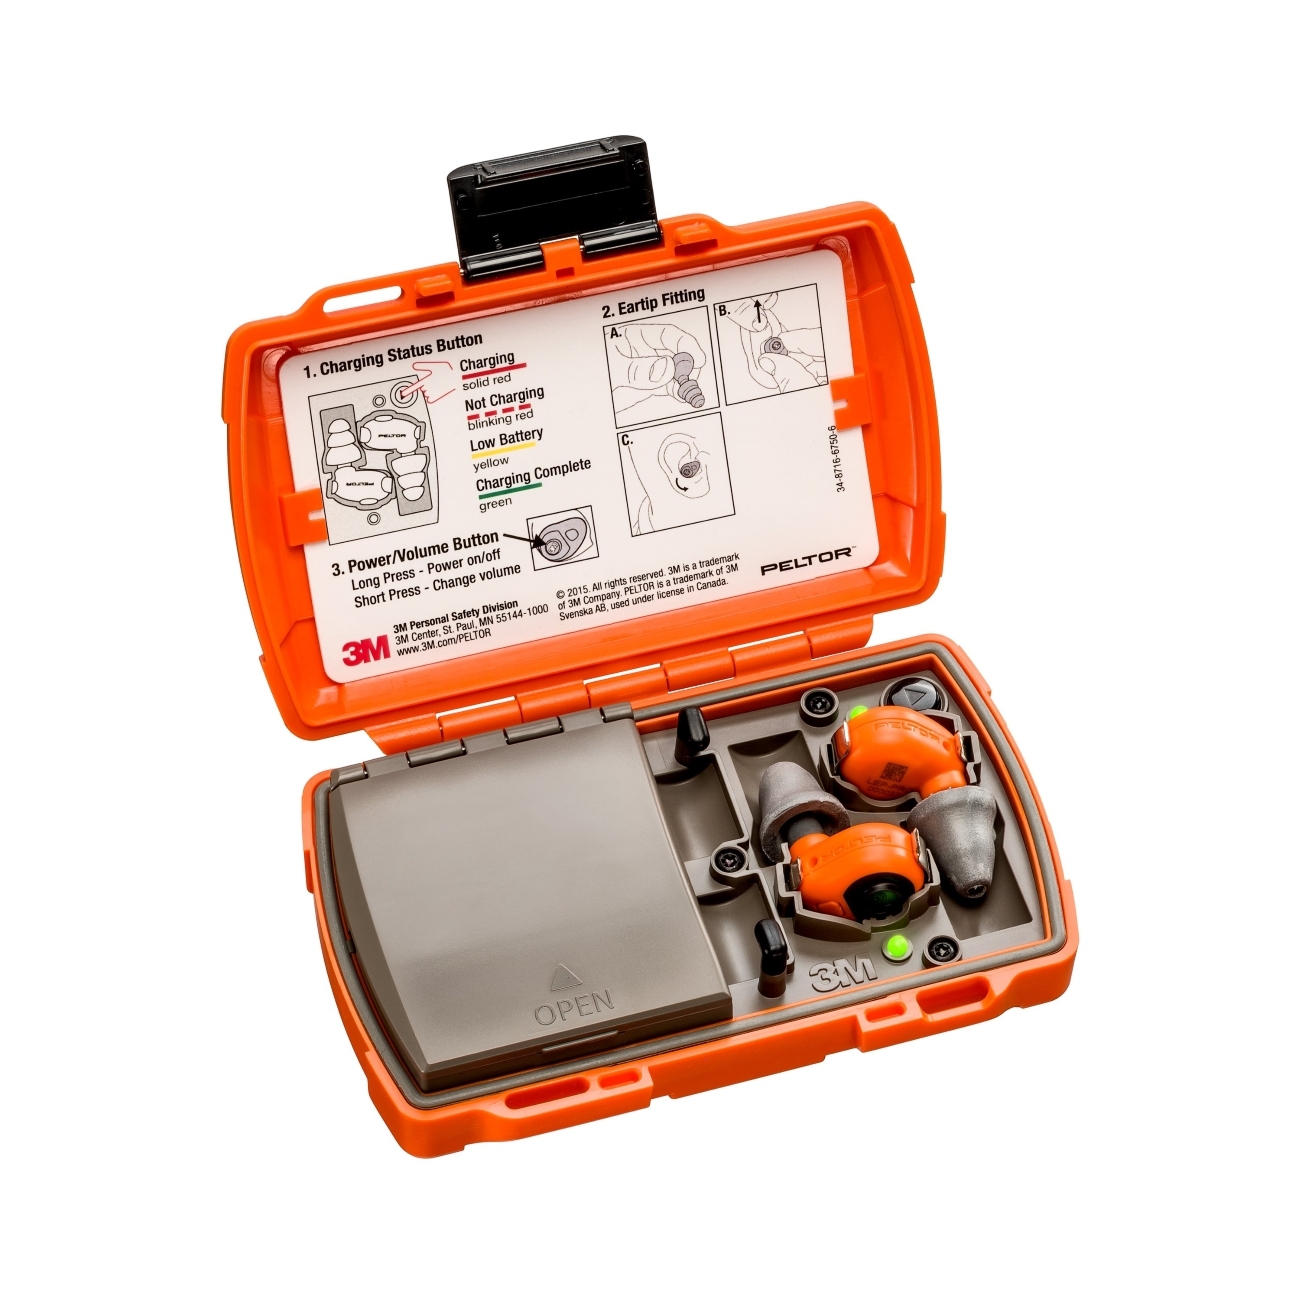  3M PELTOR LEP-200 EU orange avec antenne supplémentaire pour la réception de signaux audio sans fil, kit : les bouchons et la station de recharge (avec couvercle fermé et ports USB) sont classés IP-54 et résistants à l'eau (30 minutes d'immersion j